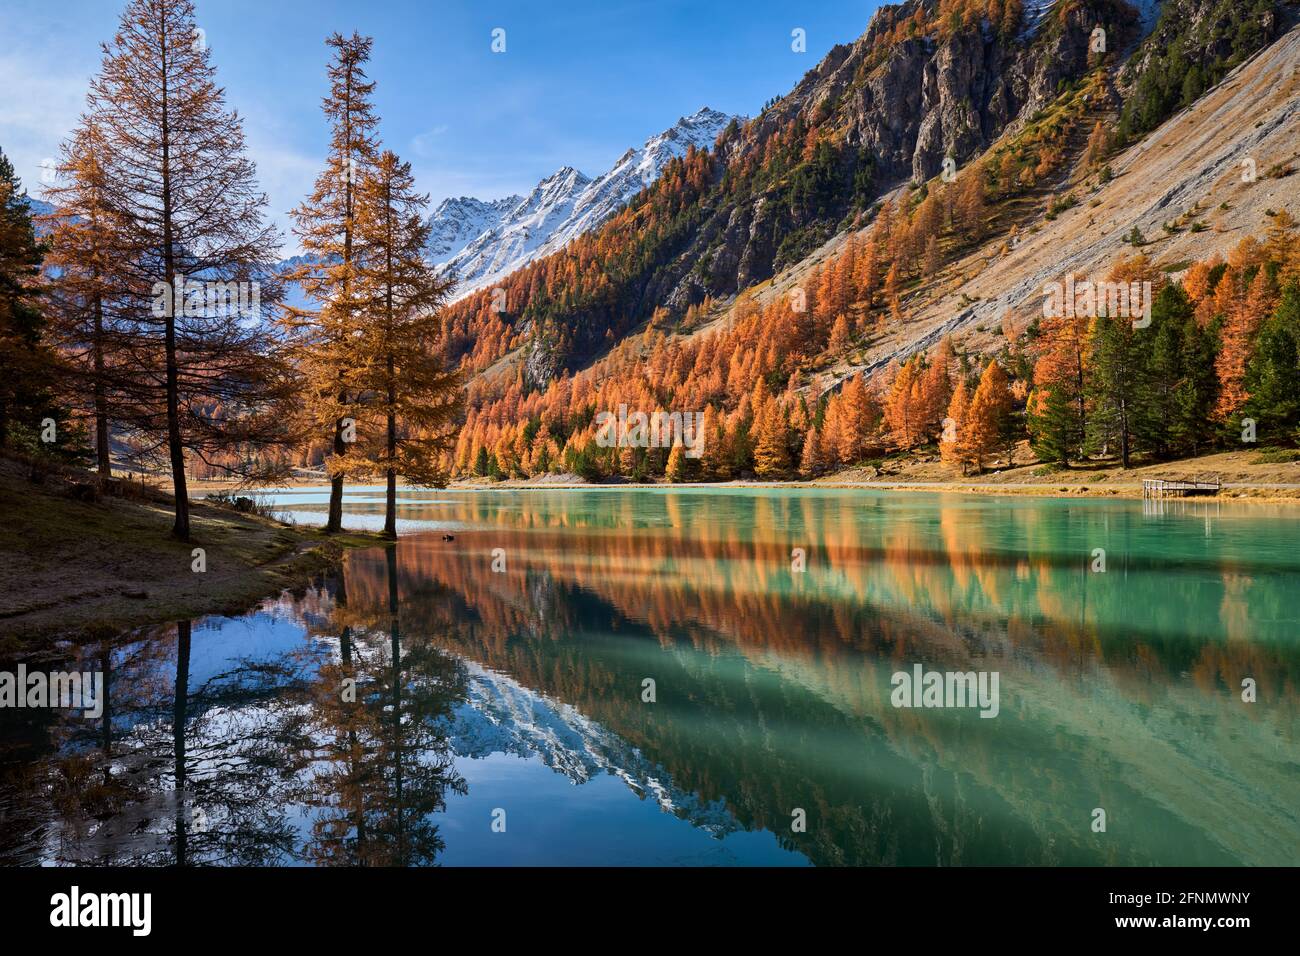 Lac Orceyrette en automne avec mélèze doré. Région de Briançon dans les Hautes-Alpes. Alpes françaises du Sud, France Banque D'Images